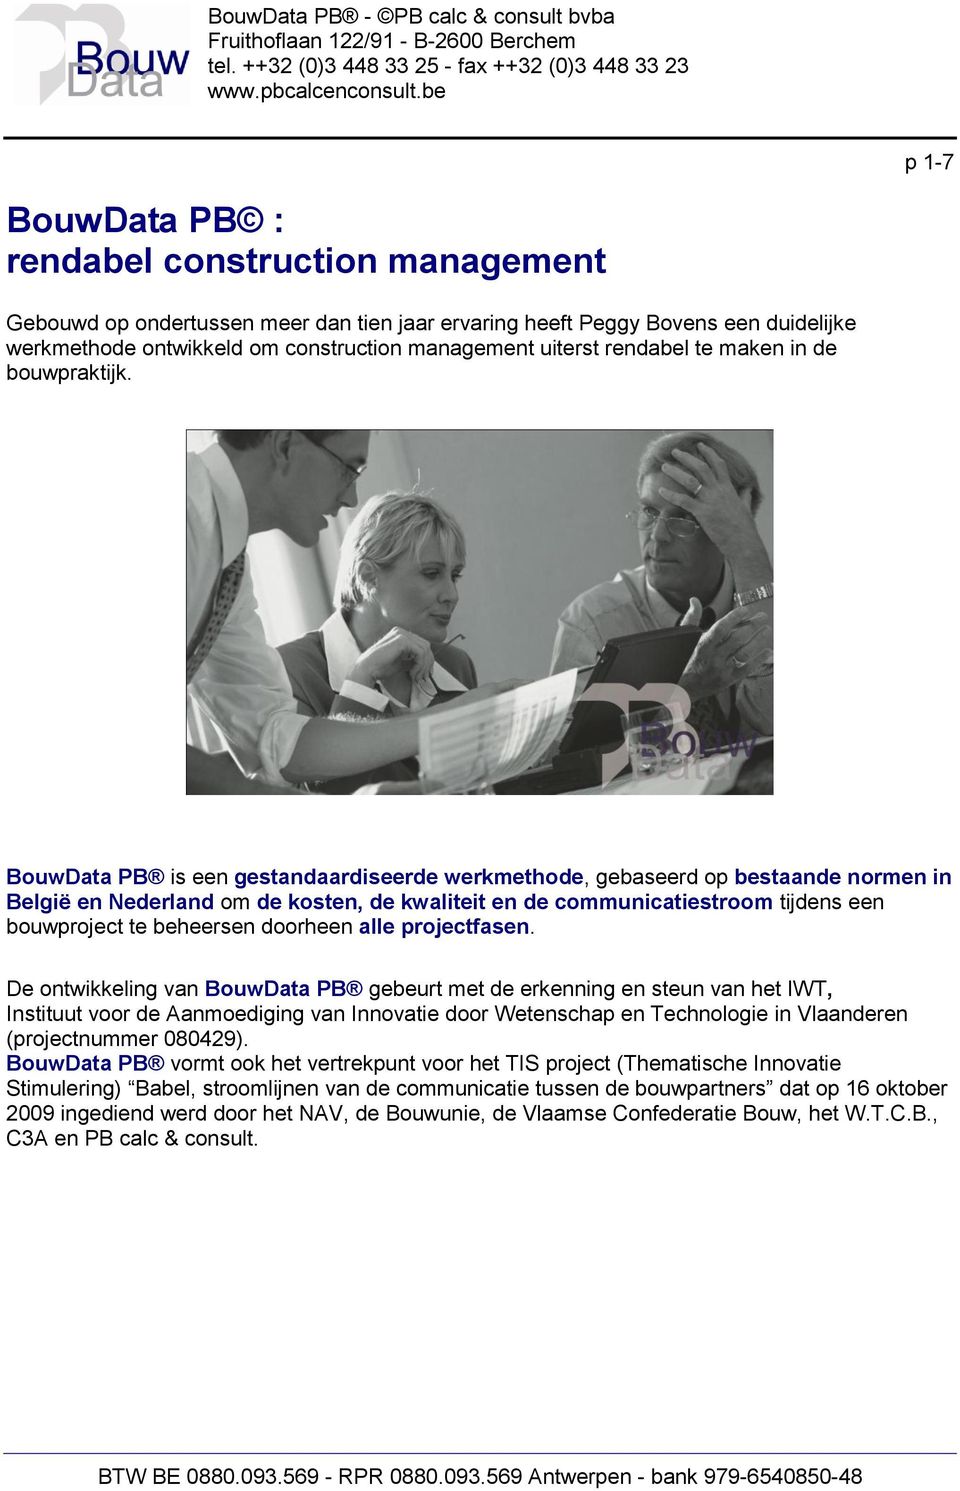 BouwData PB is een gestandaardiseerde werkmethode, gebaseerd op bestaande normen in België en Nederland om de kosten, de kwaliteit en de communicatiestroom tijdens een bouwproject te beheersen